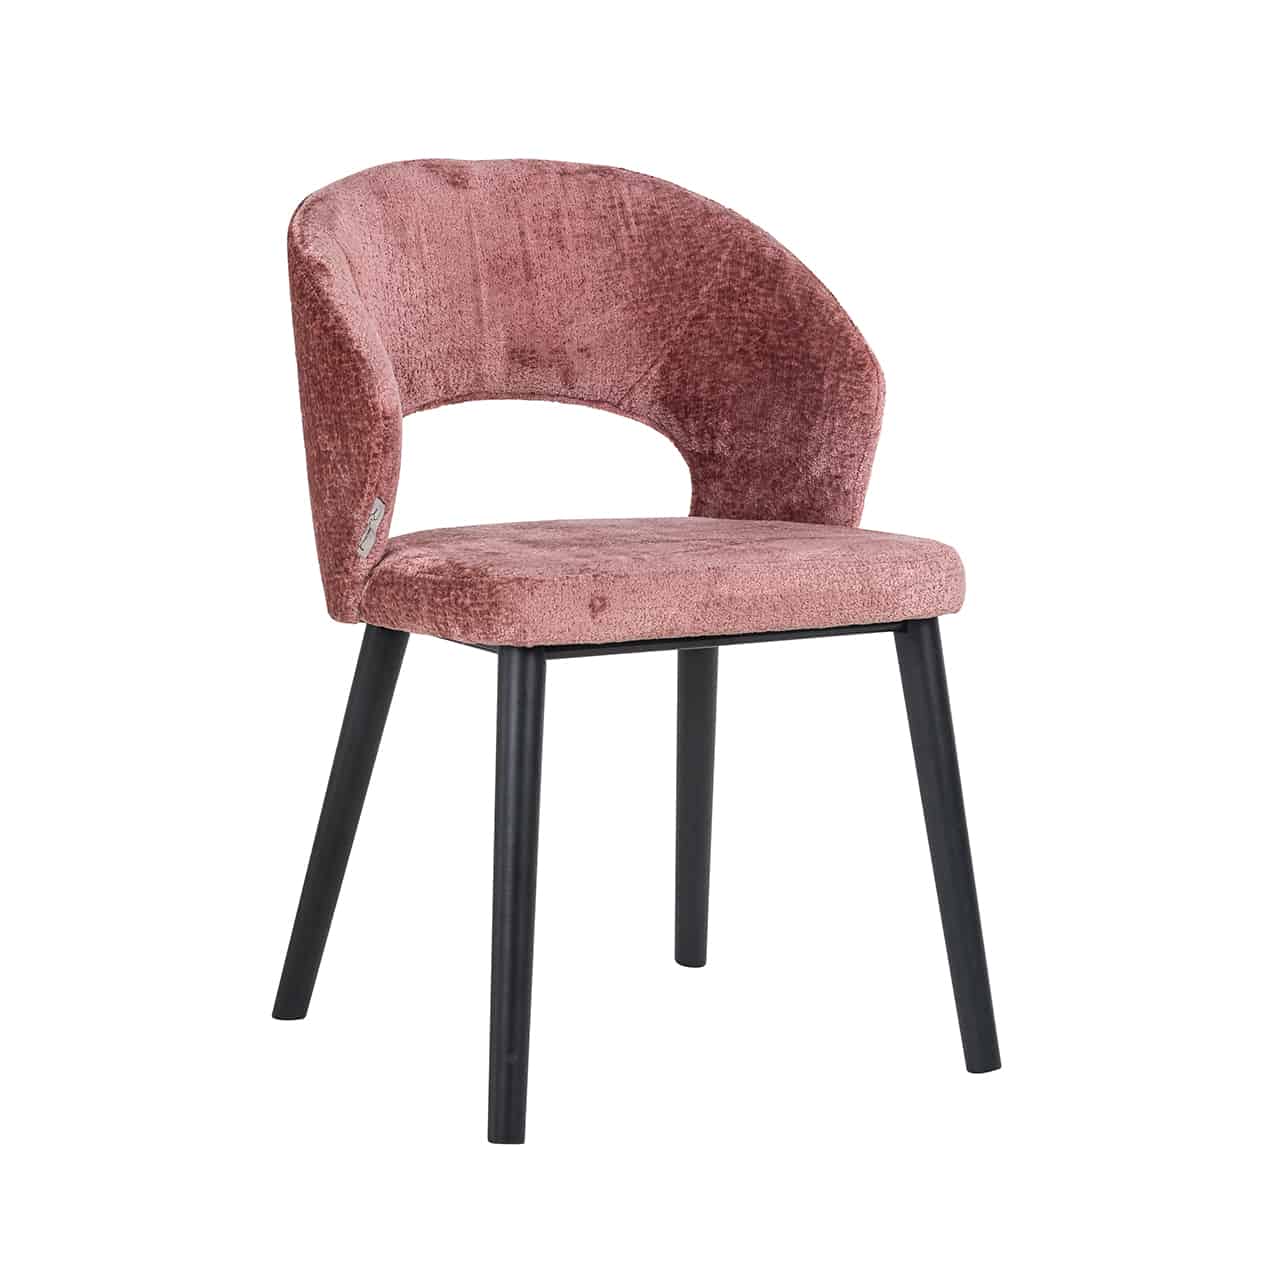 Vollpolsterstuhl mit leicht nach außen gestellten, kräftigen Beinen in schwarz; bezogen mit flauschigem, rosa Chenille; halbrunde Rückenlehne mit breiter bogenförmiger Öffnung.